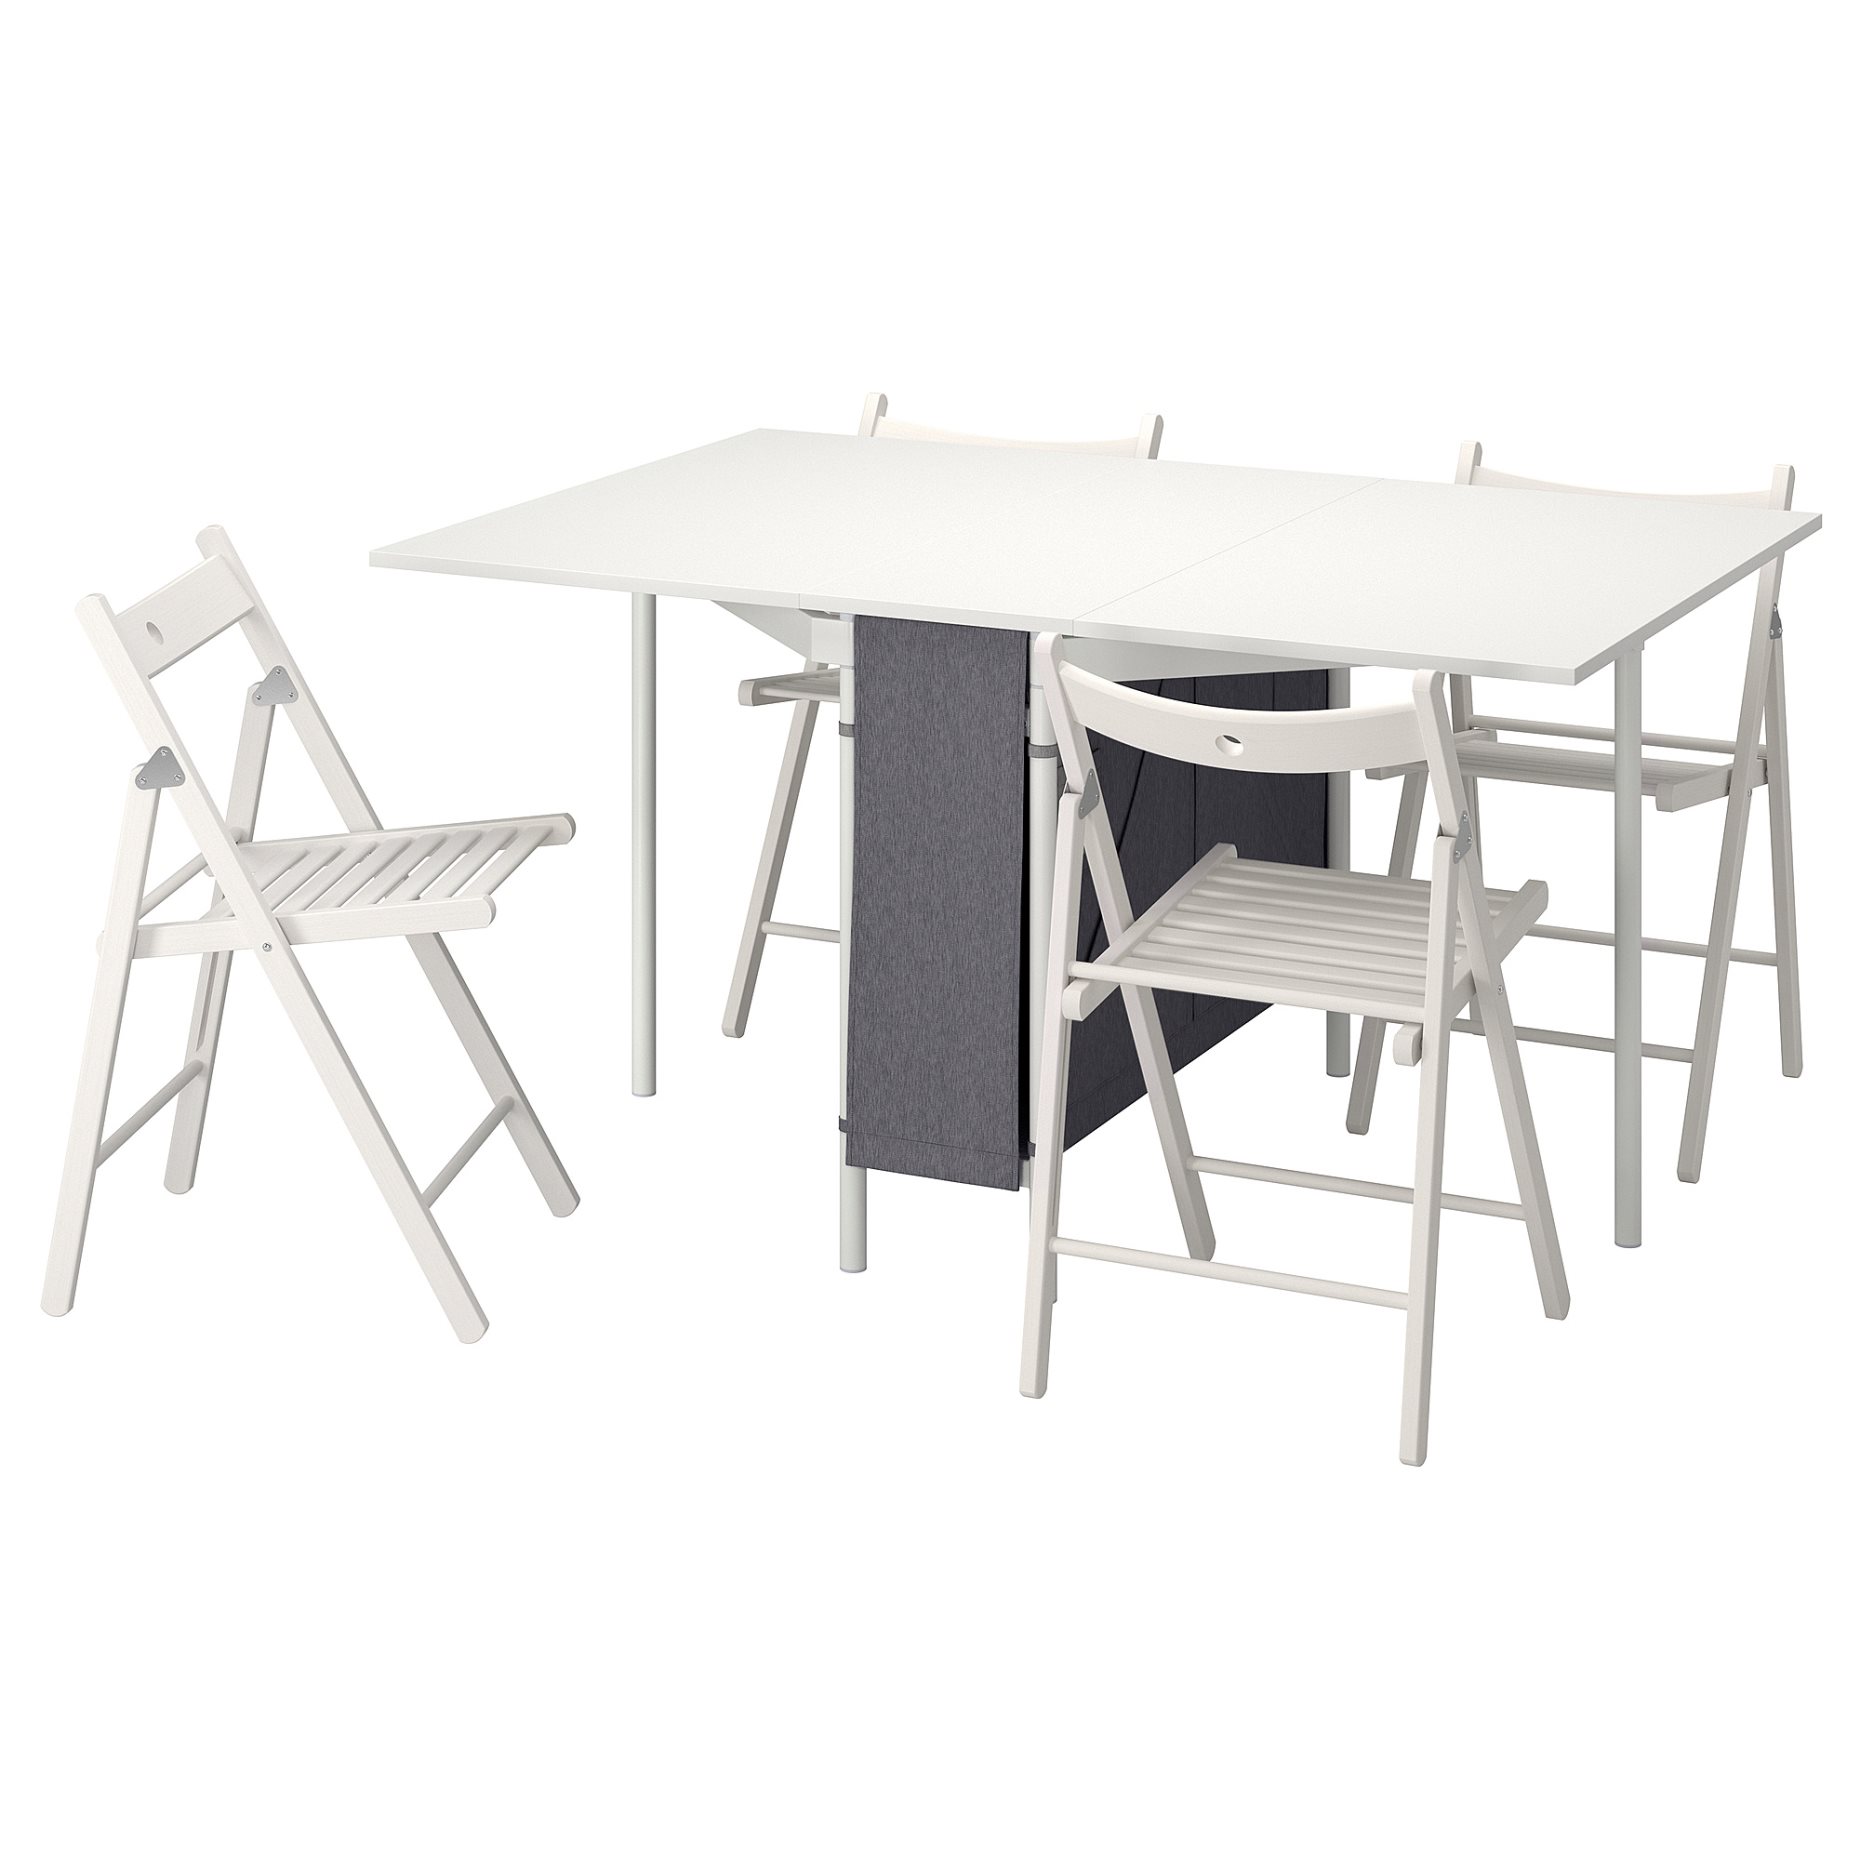 KALLHALL/TERJE, τραπέζι και 4 καρέκλες, 89x98 cm, 594.281.80